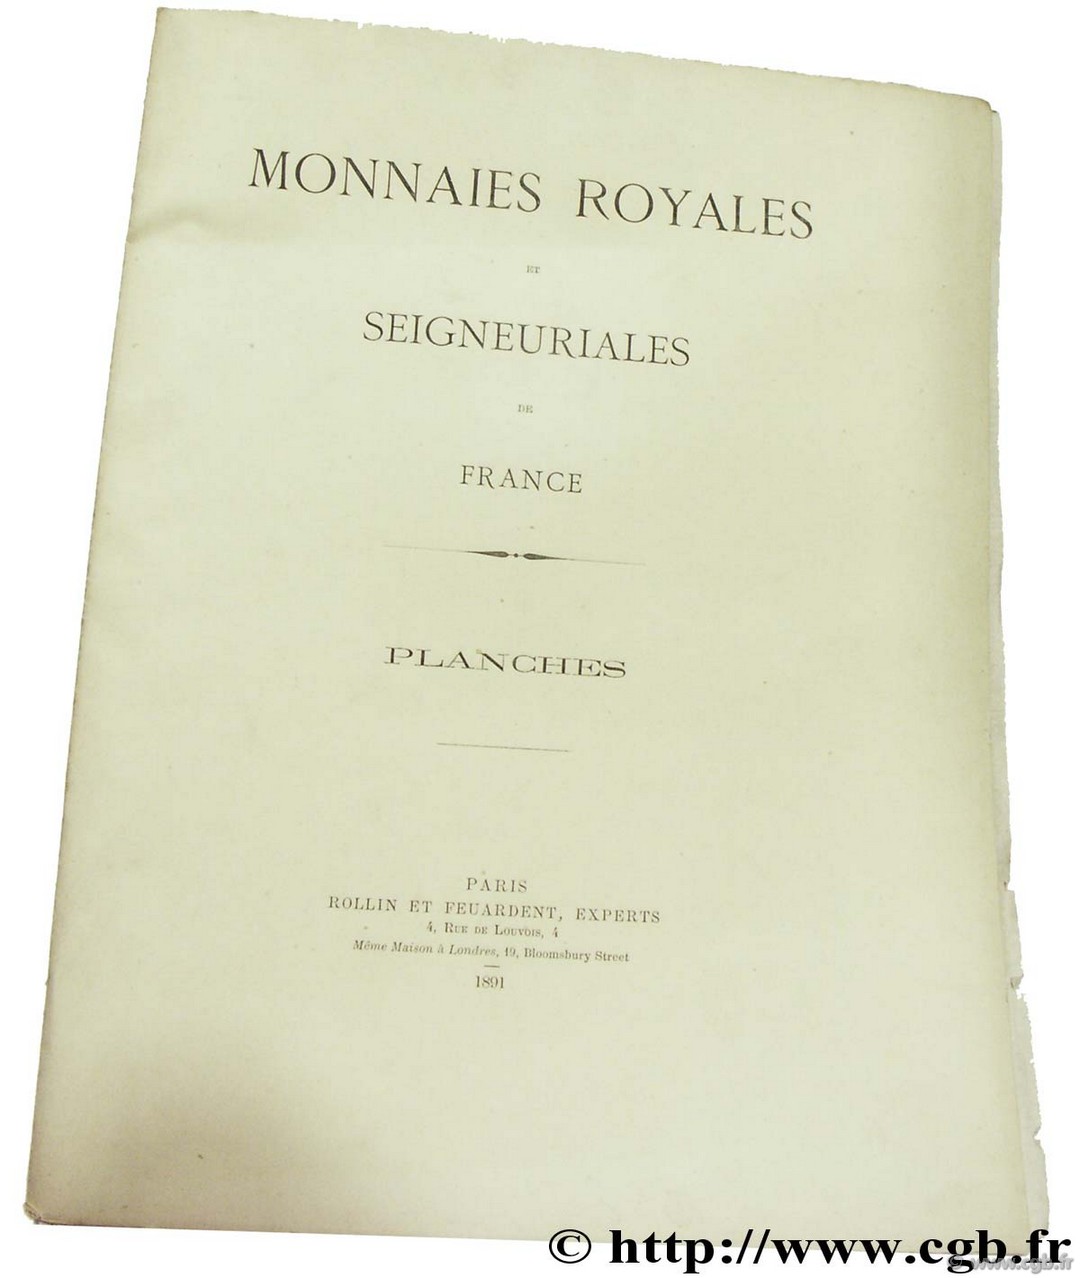 Catalogue des monnaies royales et seigneuriales de France depuis les mérovingiens jusqu à nos jours 